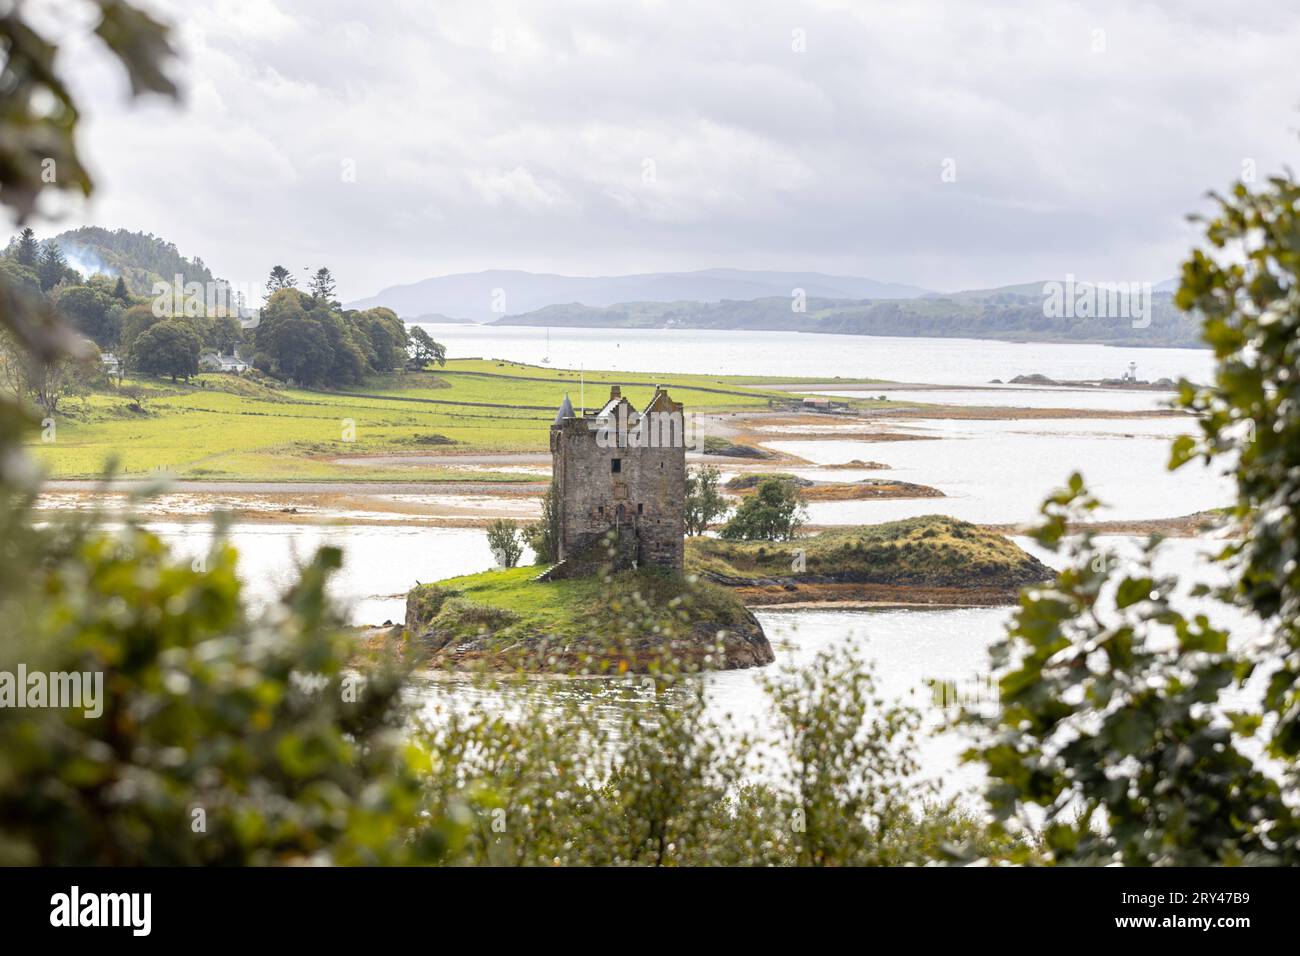 Die Burg Castle Stalker aus dem 14. Jahrhundert à Appin dans Schottland. Die Inselburg steht auf einer kleinen, felsigen Gezeiteninsel im Loch Laich, einer Bucht des Loch Linnhe. SIE diente als Filmkulisse für den Kultfilm Monty Python et le Saint Graal Ritter der Kokosnuss 21.09.2023 Appin Portnacroish Schottland Großbritannien *** le château du 14e siècle Stalker à Appin, Écosse le château de l'île se dresse sur une petite île rocheuse à marée dans le Loch Laich, une baie de Loch Linnhe il a servi de décor de film pour le film culte Monty Python et les saints Chevaliers du Graal de la noix de coco 21 09 2023 Appin Portnac Banque D'Images